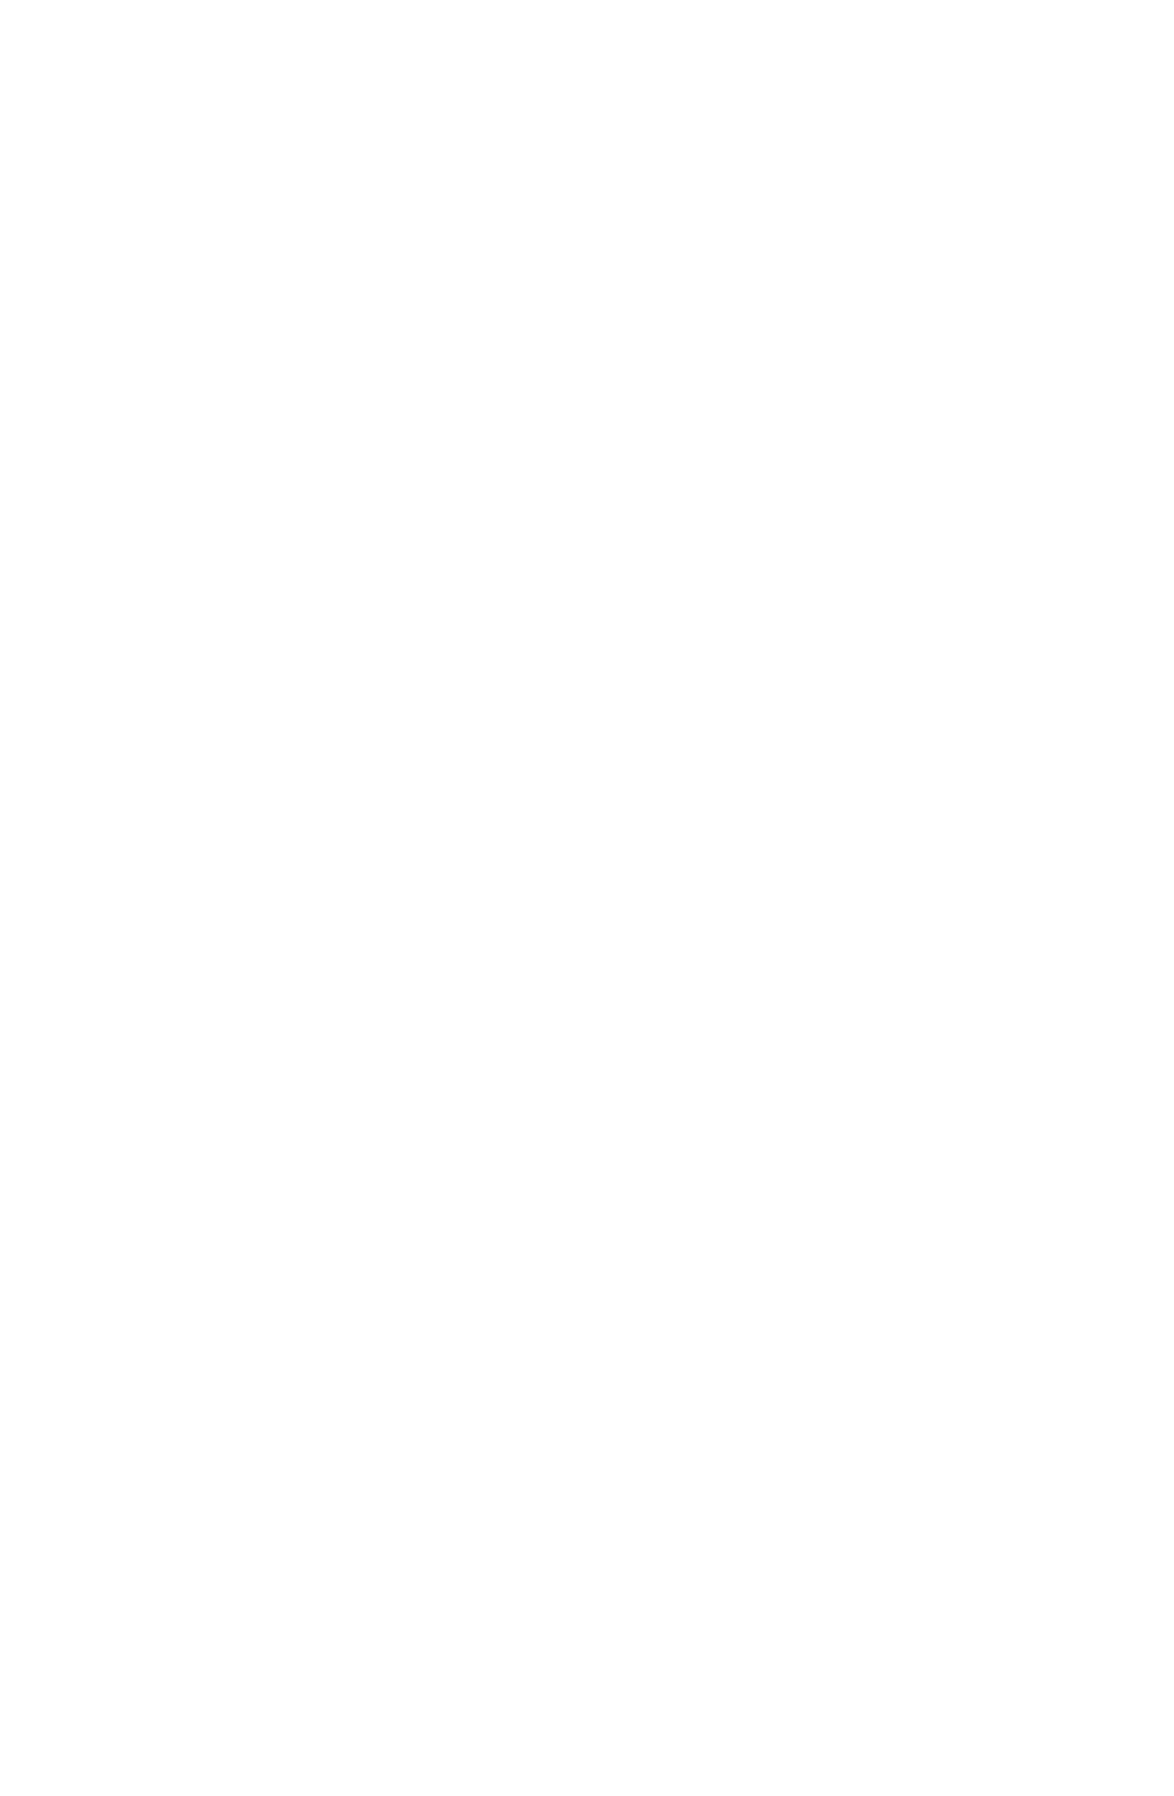 Logo icon for Avery at Moorpark in Moorpark, California